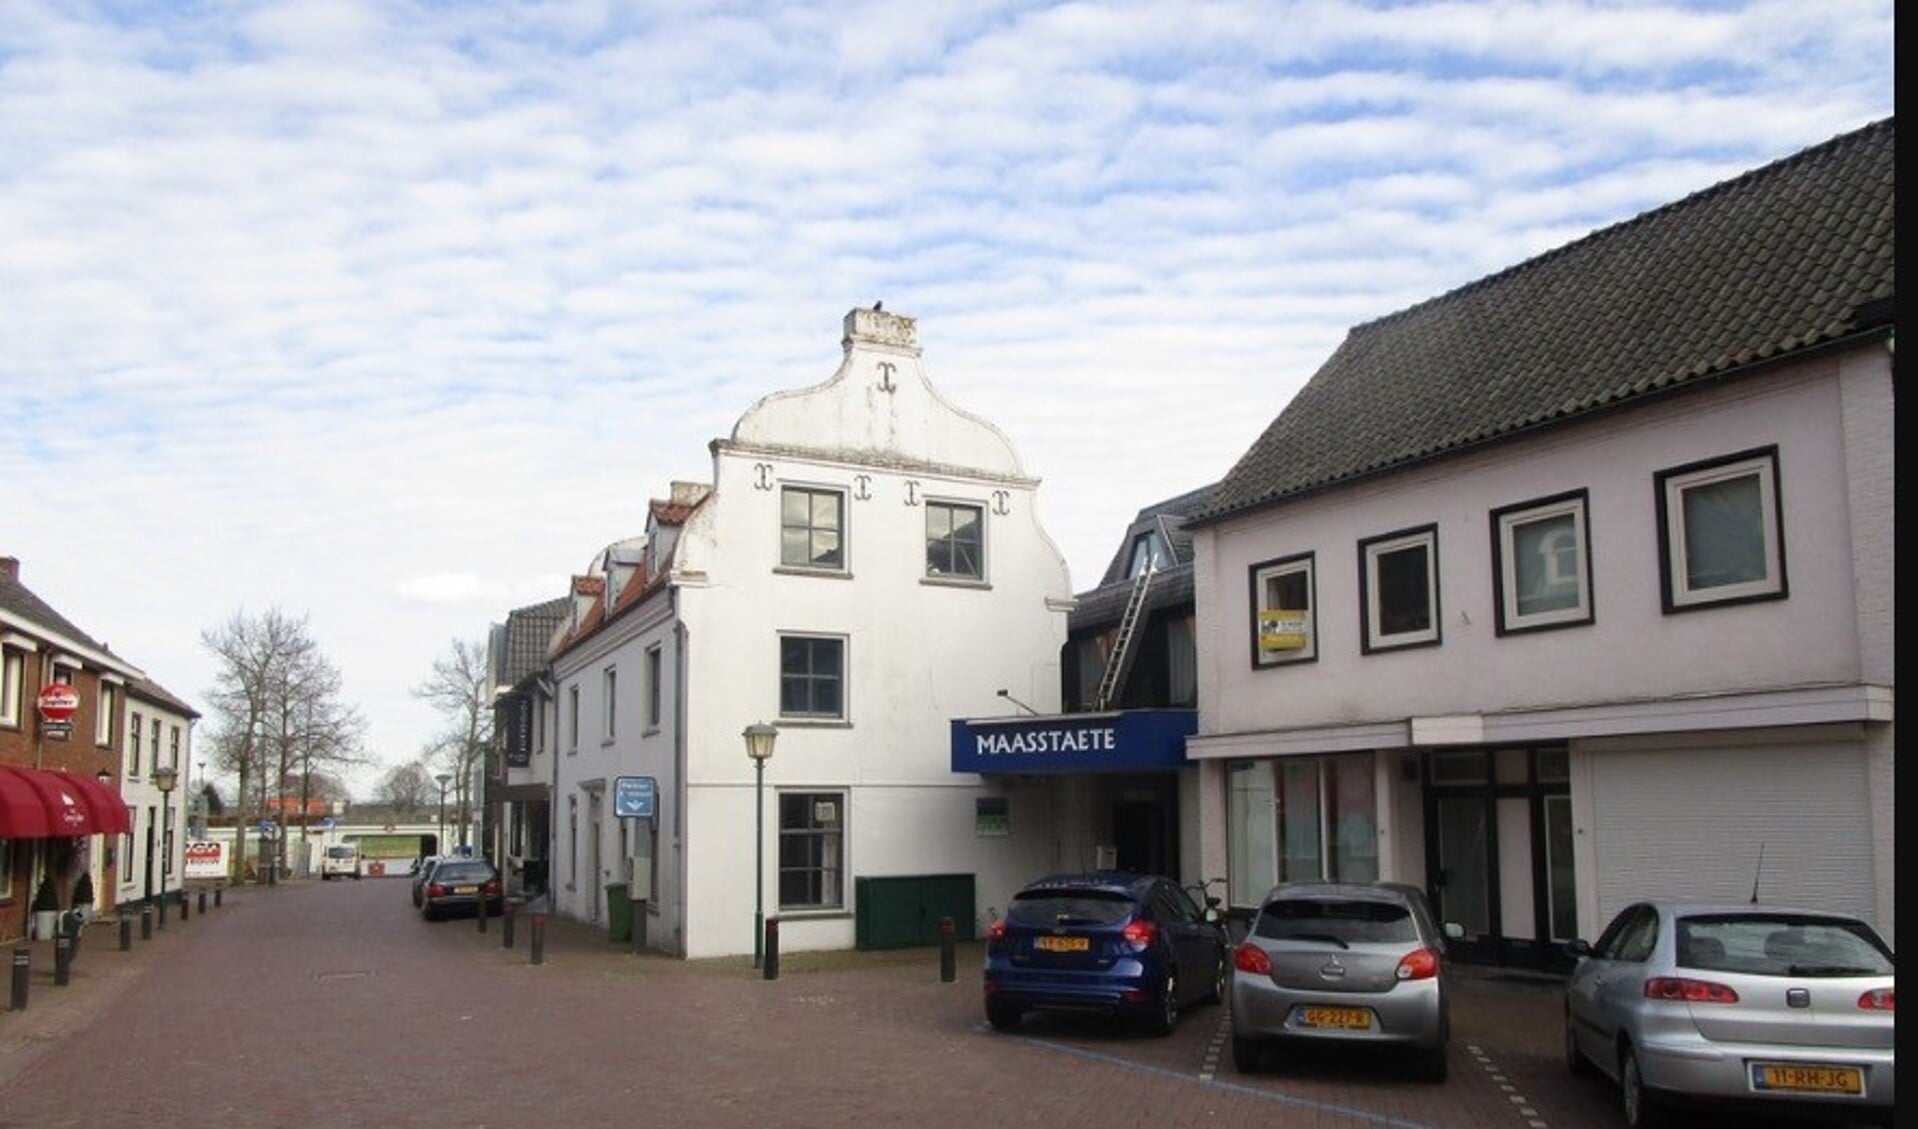 Rechts aan de Maasstraat moet de Cuijkse servicebioscoop komen.